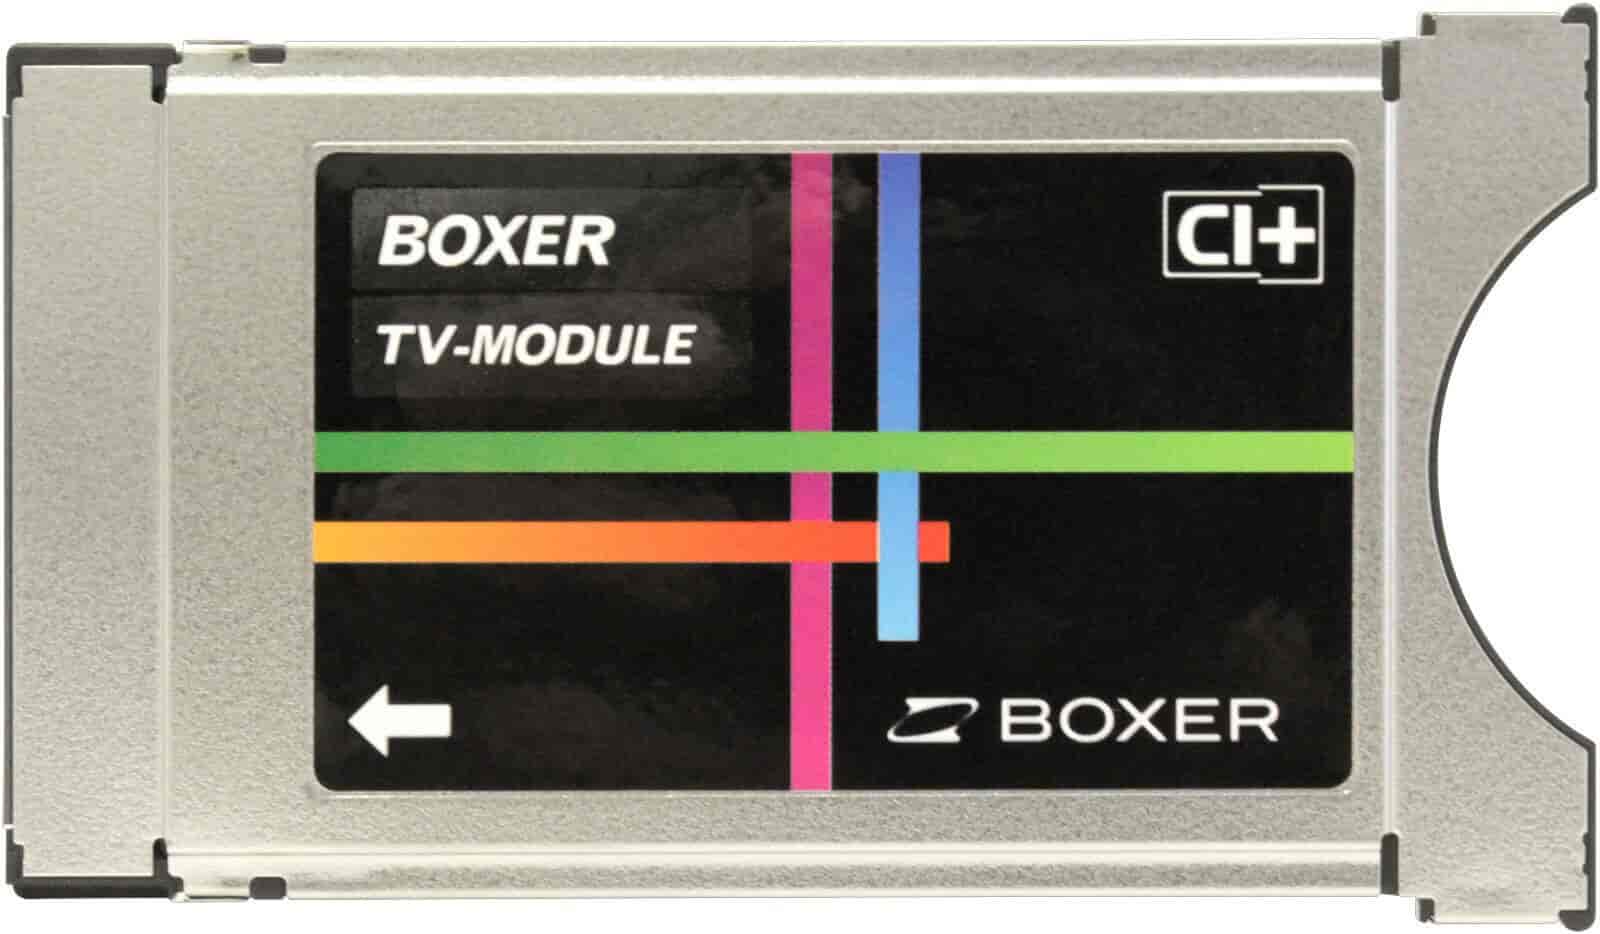 Boxer CA modul CI+. Til HDTV modtagelse via antenne.